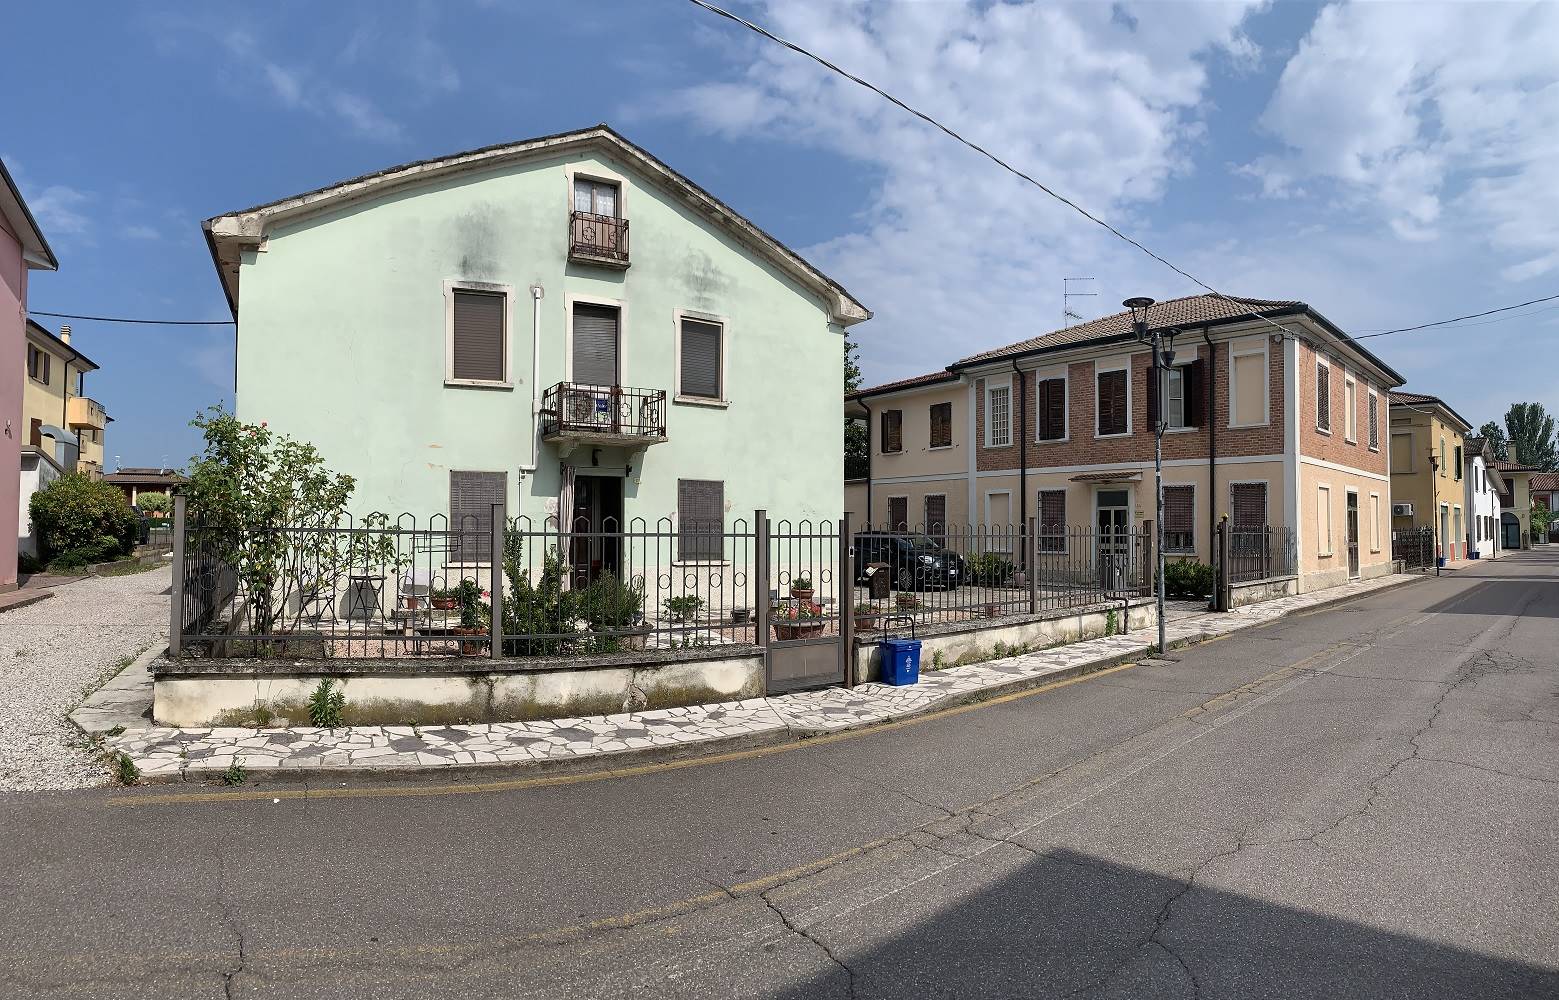 Soluzione Indipendente in vendita a Castelbelforte, 13 locali, prezzo € 160.000 | PortaleAgenzieImmobiliari.it